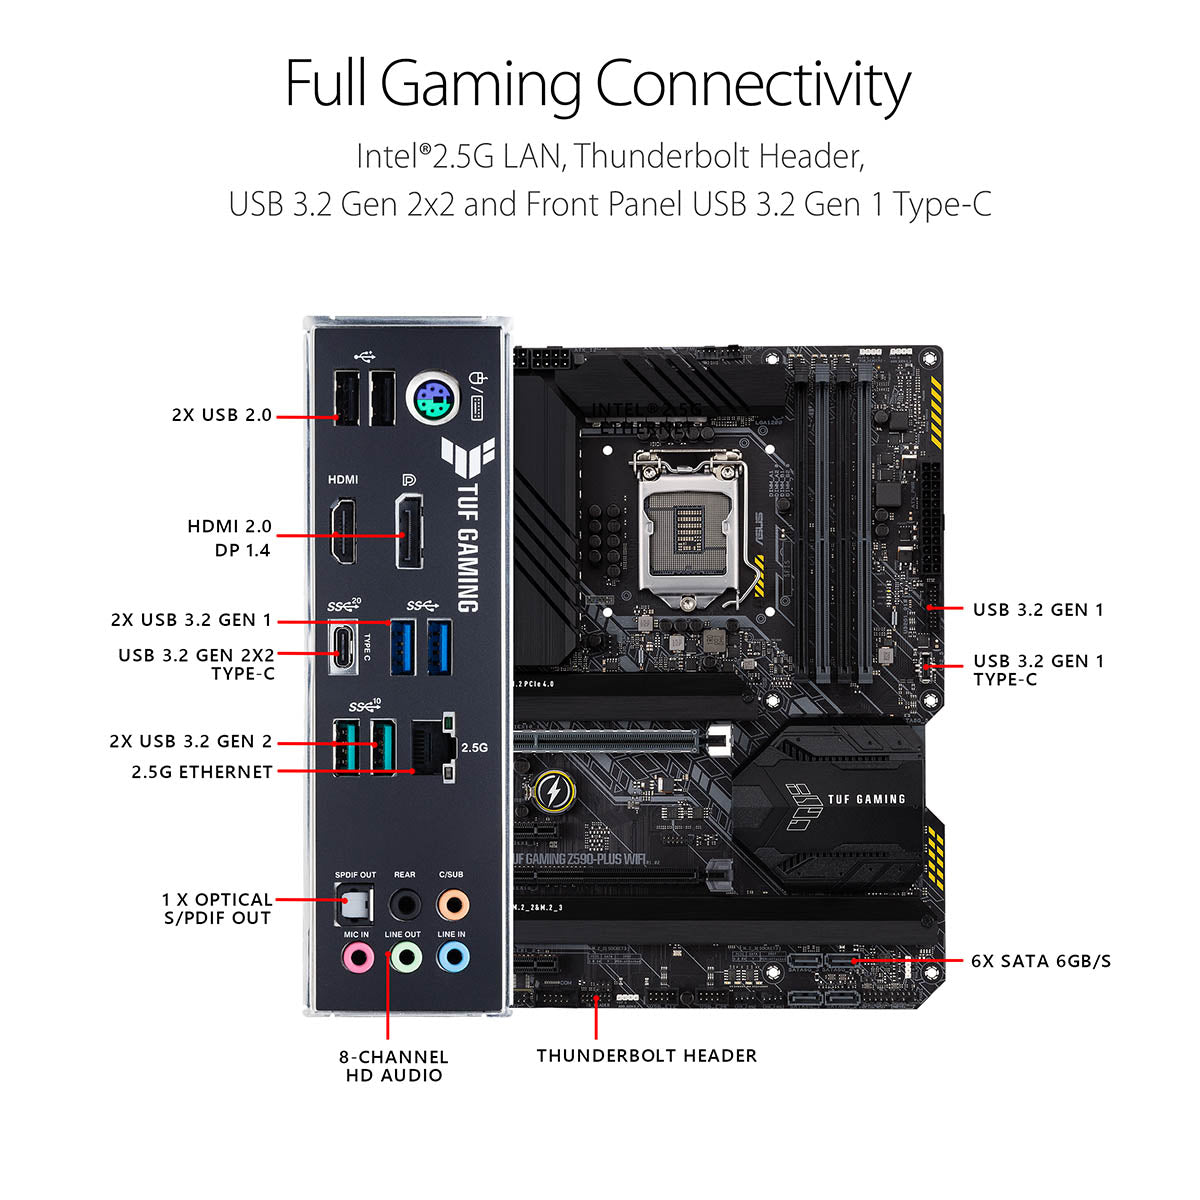 ASUS TUF गेमिंग Z590-Plus ATX LGA 1200 मदरबोर्ड थंडरबोल्ट 4 सपोर्ट और AI नॉइज़ कैंसलेशन के साथ